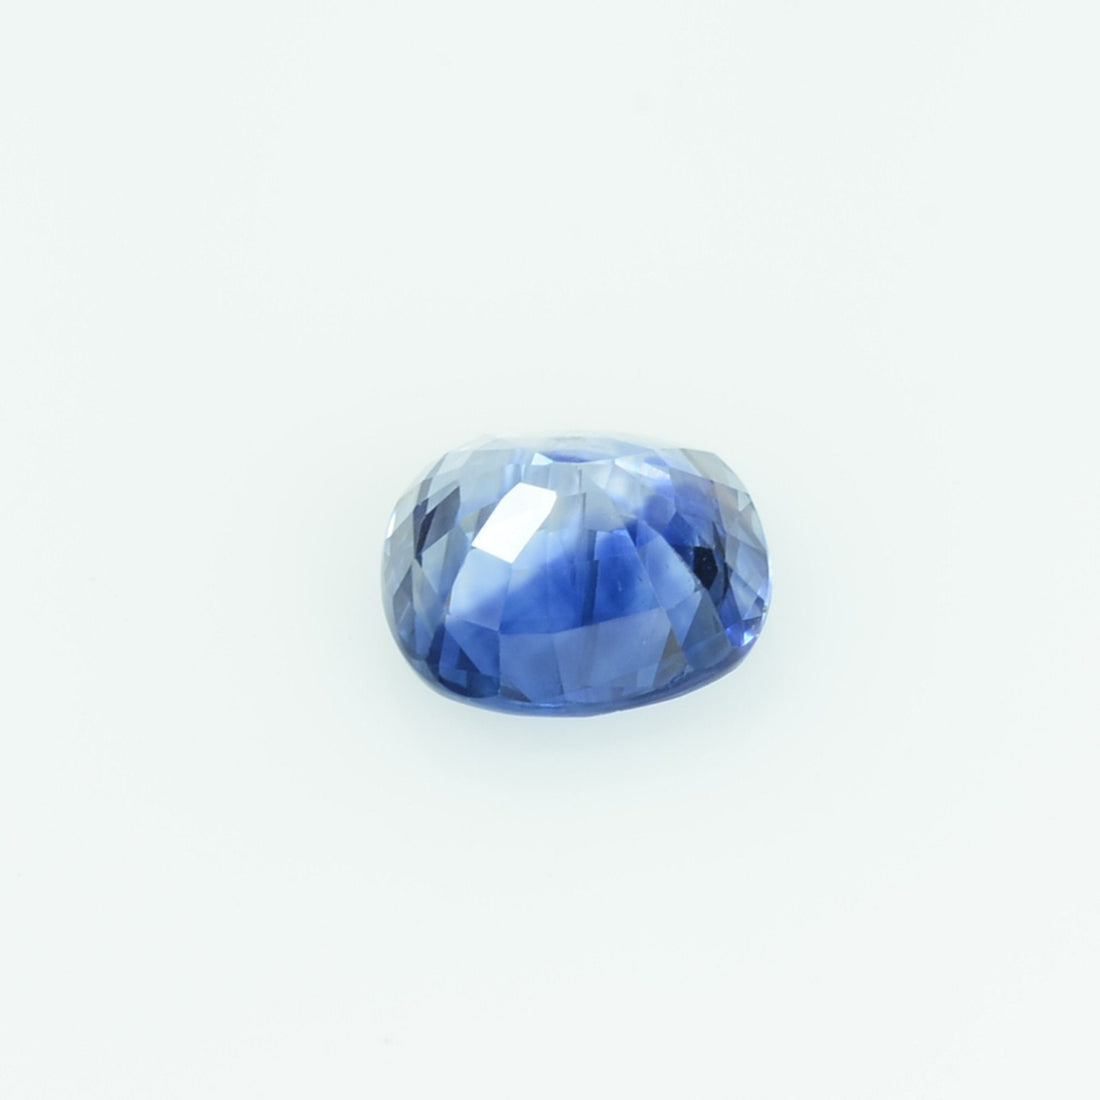 0.80 cts Natural Blue Sapphire Loose Gemstone Cushion Cut